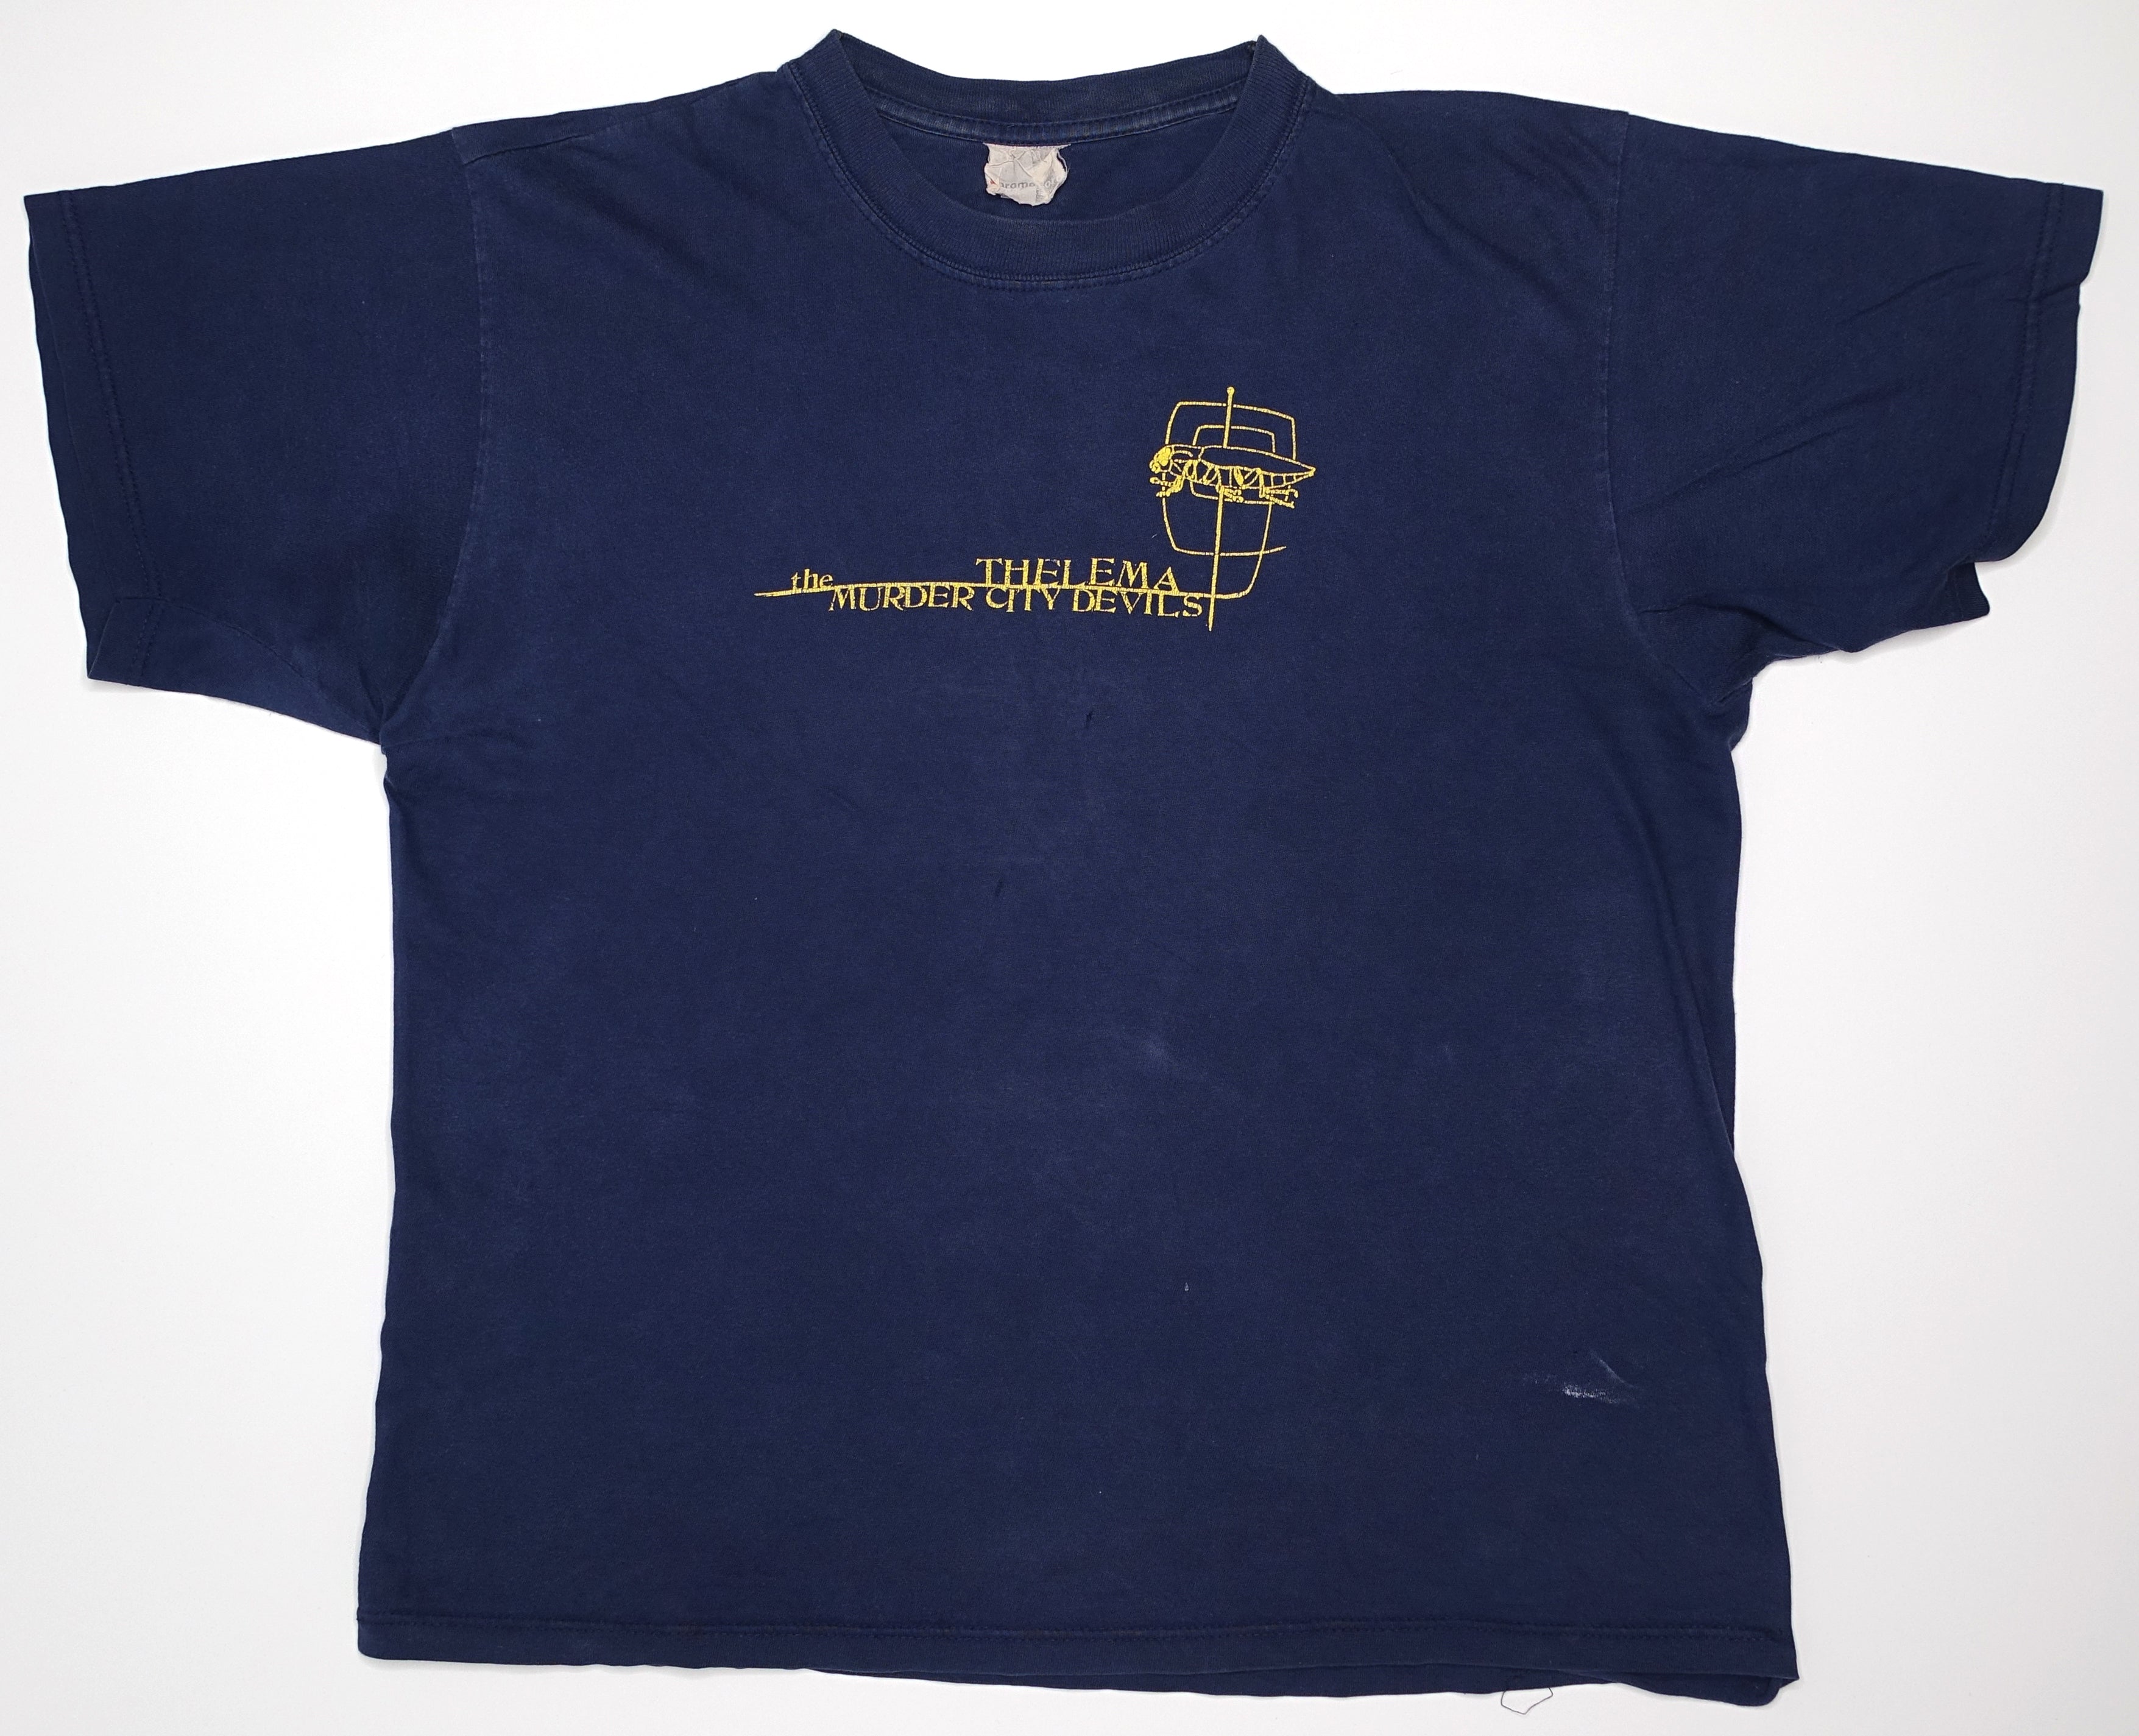 Murder City Devils ‎– Thelma 2001 Tour Shirt Size Large